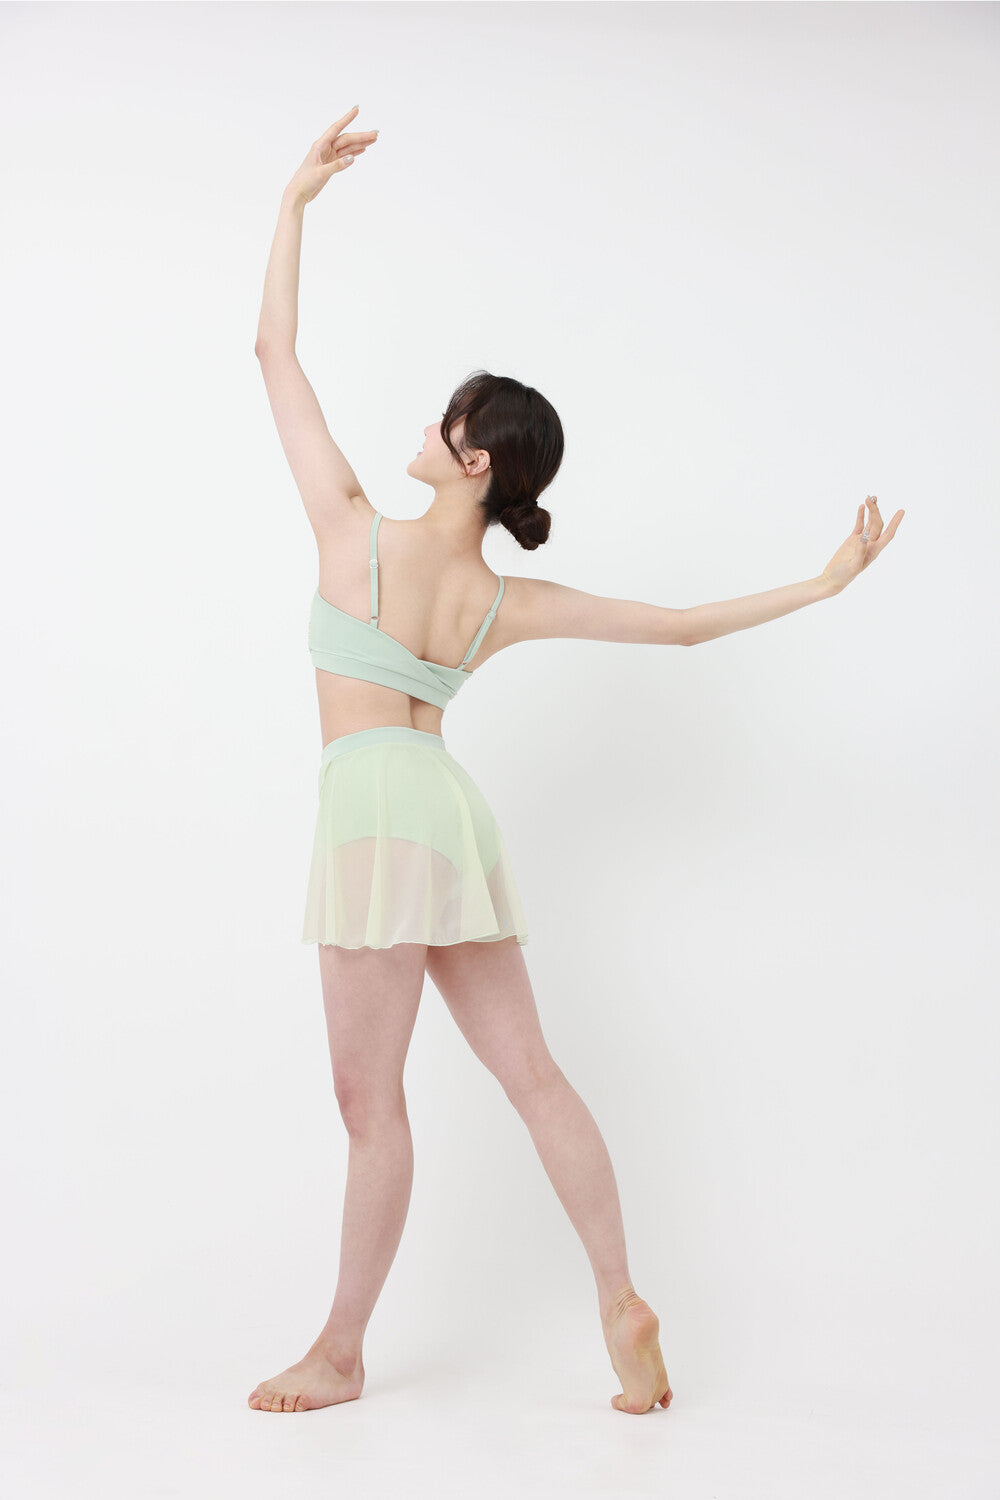 Ballet Mesh Skirt Pants (Apple Mint)